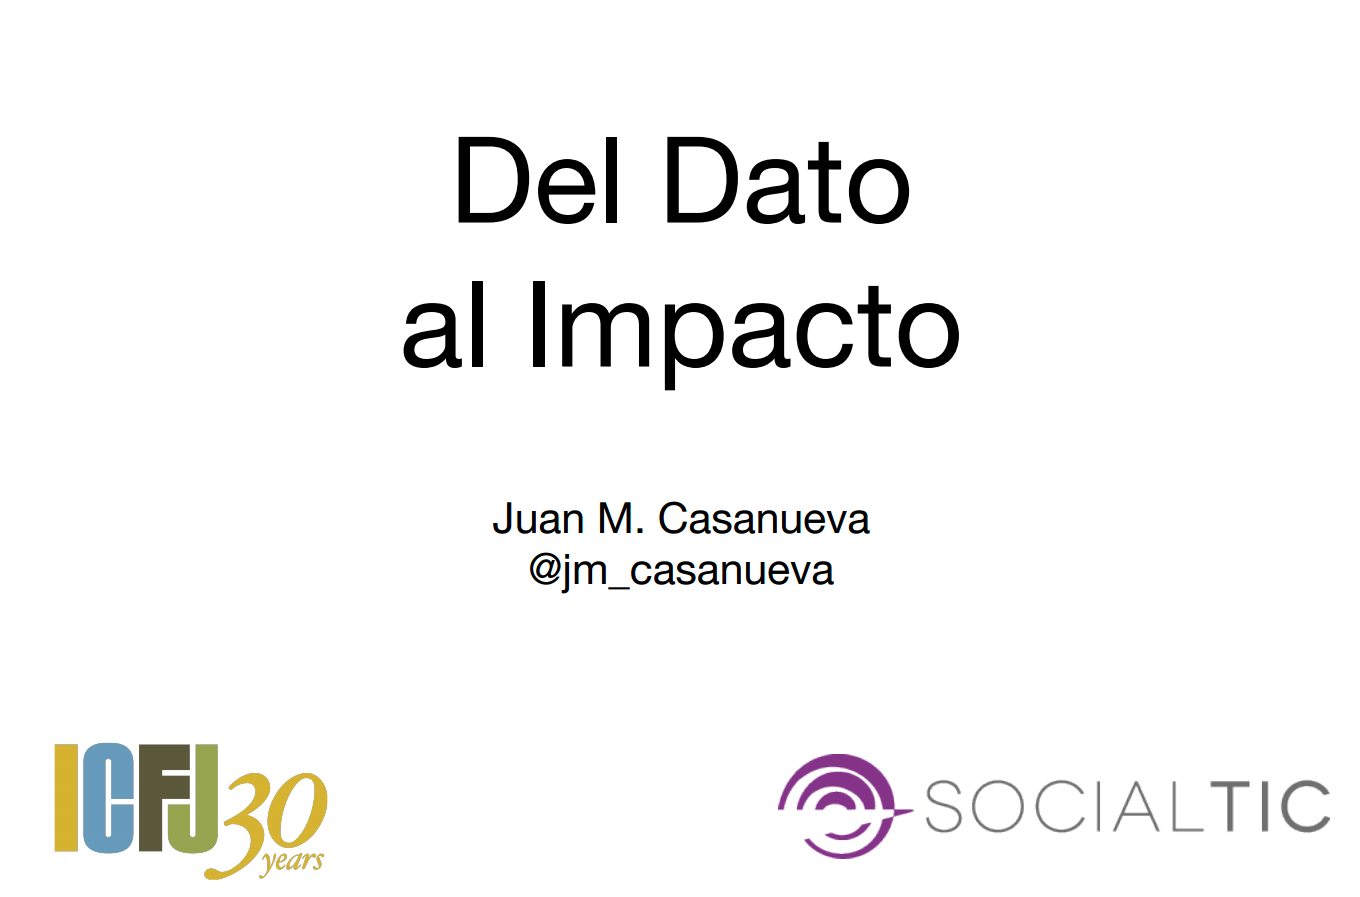 Juan Manuel Casanueva - Del dato al impacto. Social TIC. México.